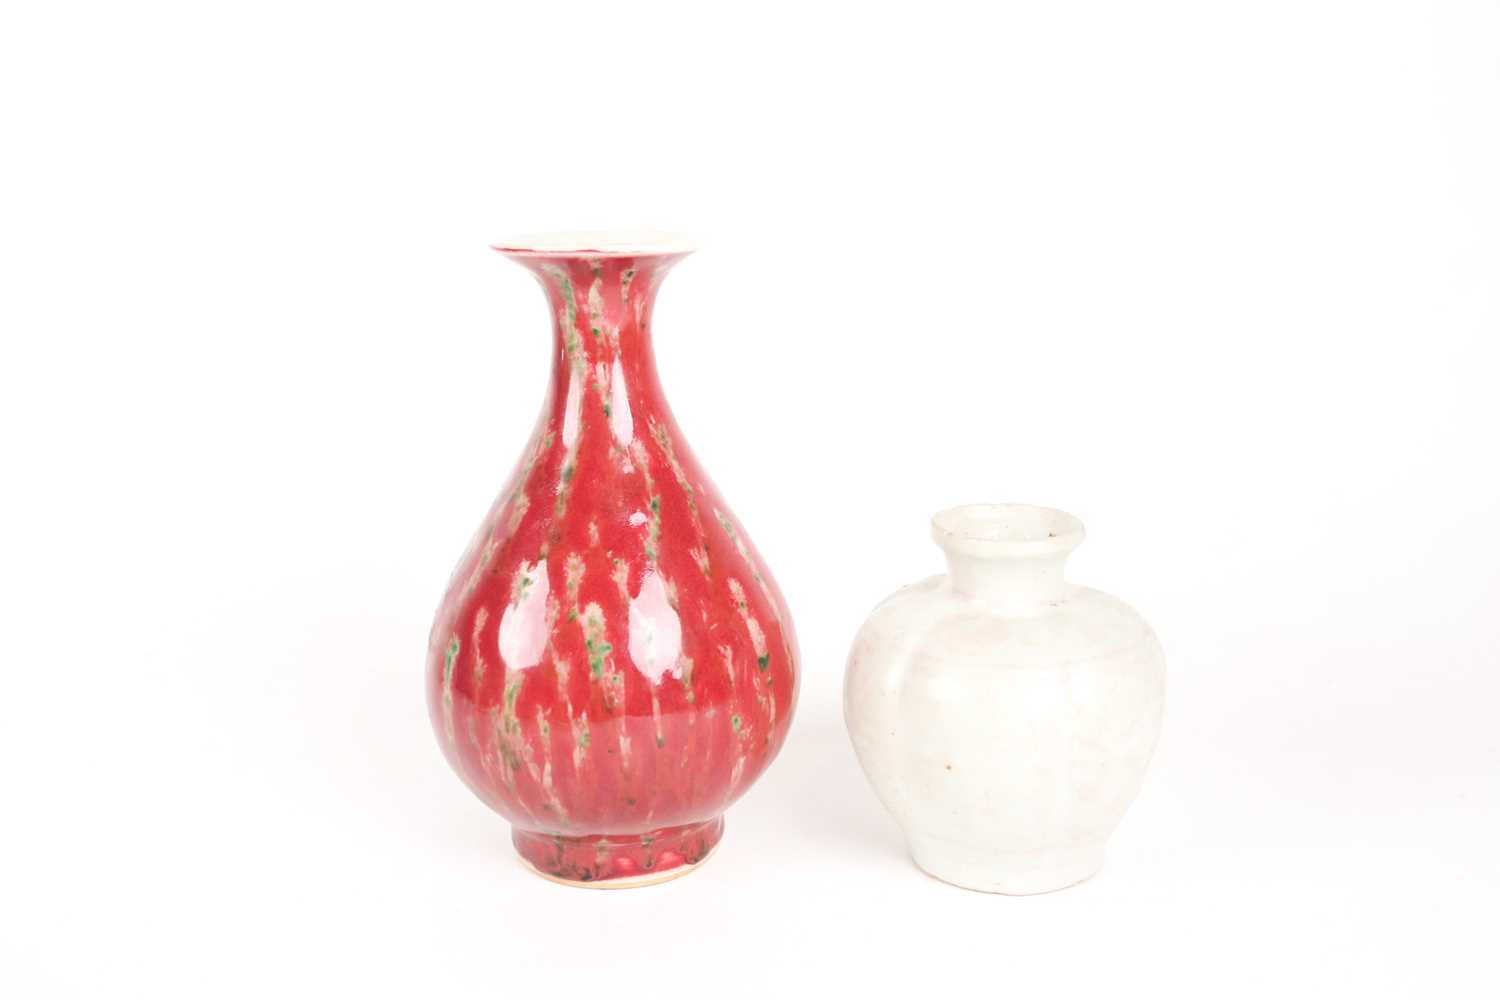 A Chinese white glazed segmented globular vase, Song dynasty, painted with underglaze red decoration